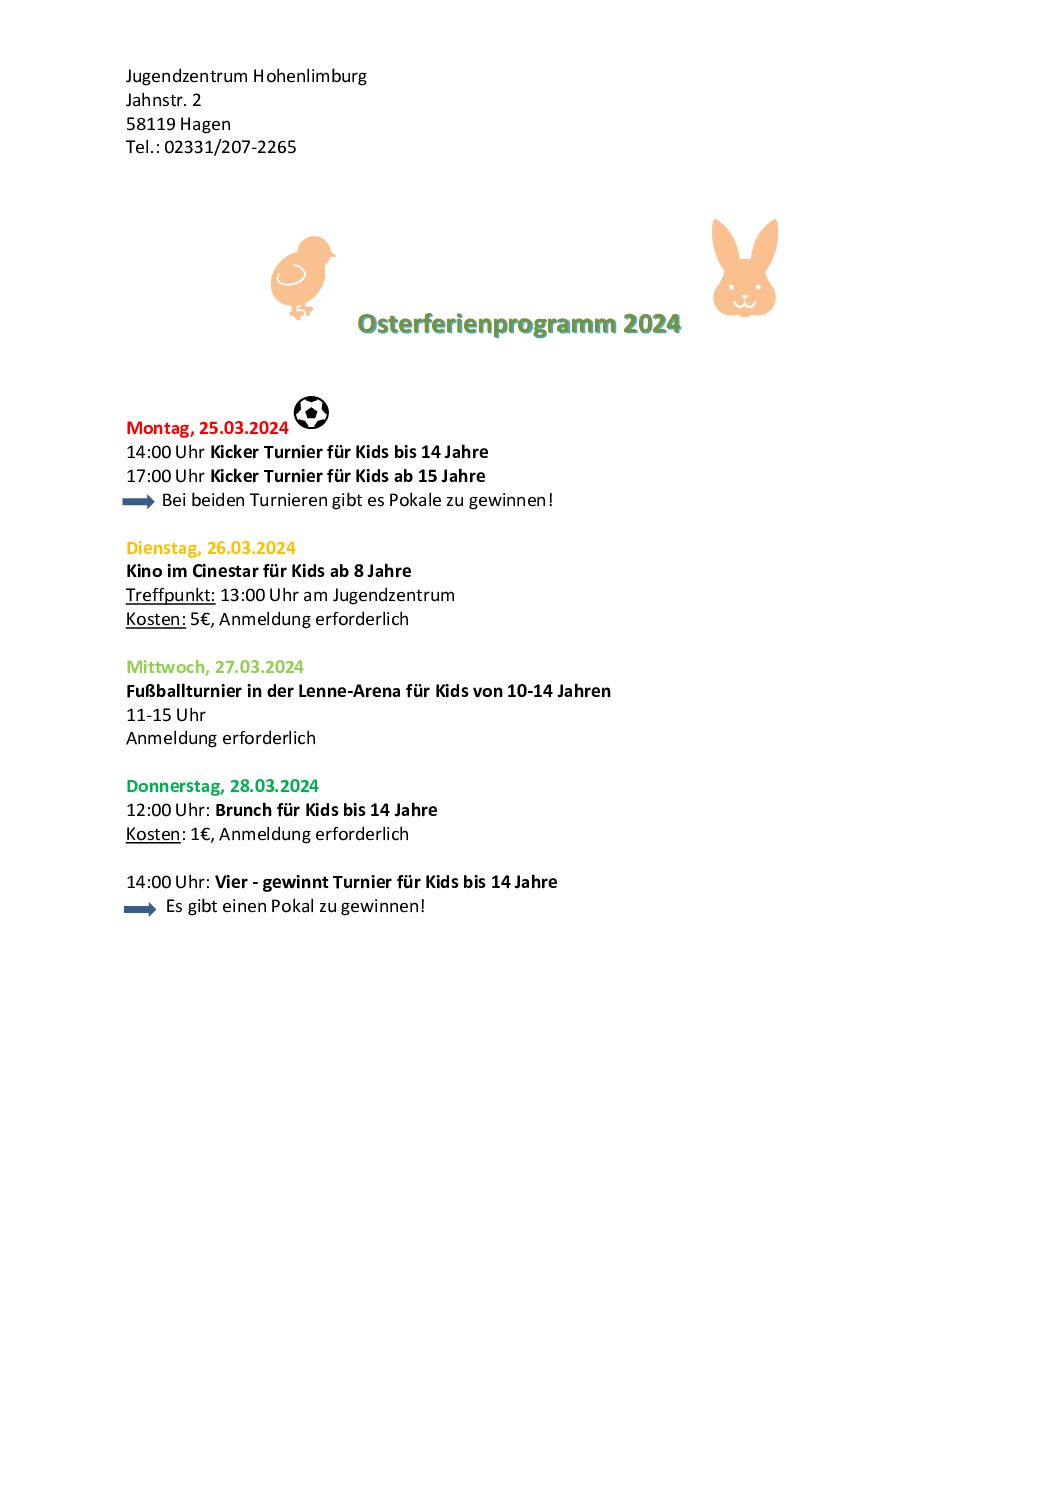 Osterferienprogramm 2024 Jugendzentrum Hohenlimburg